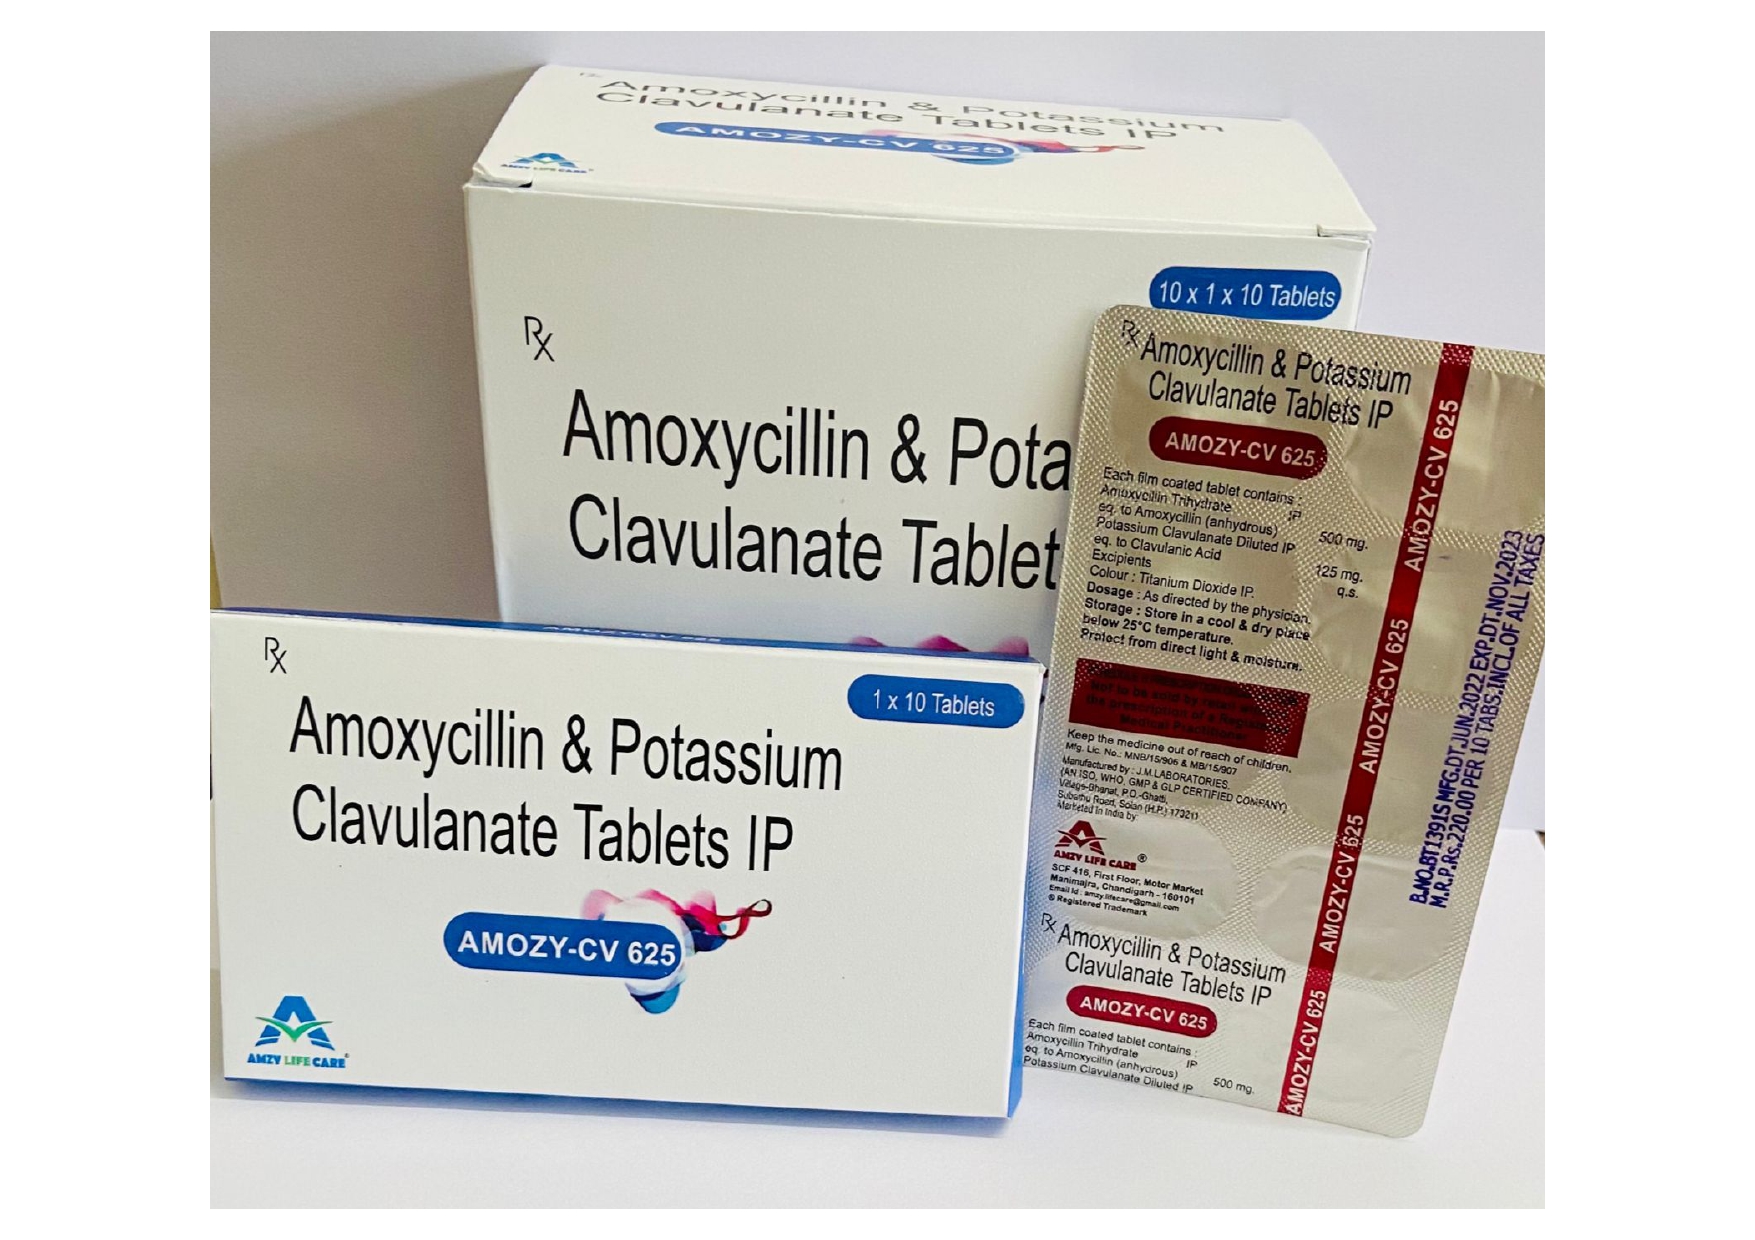 amoxycillin 500 mg + clavulanic acid 125 mg tab